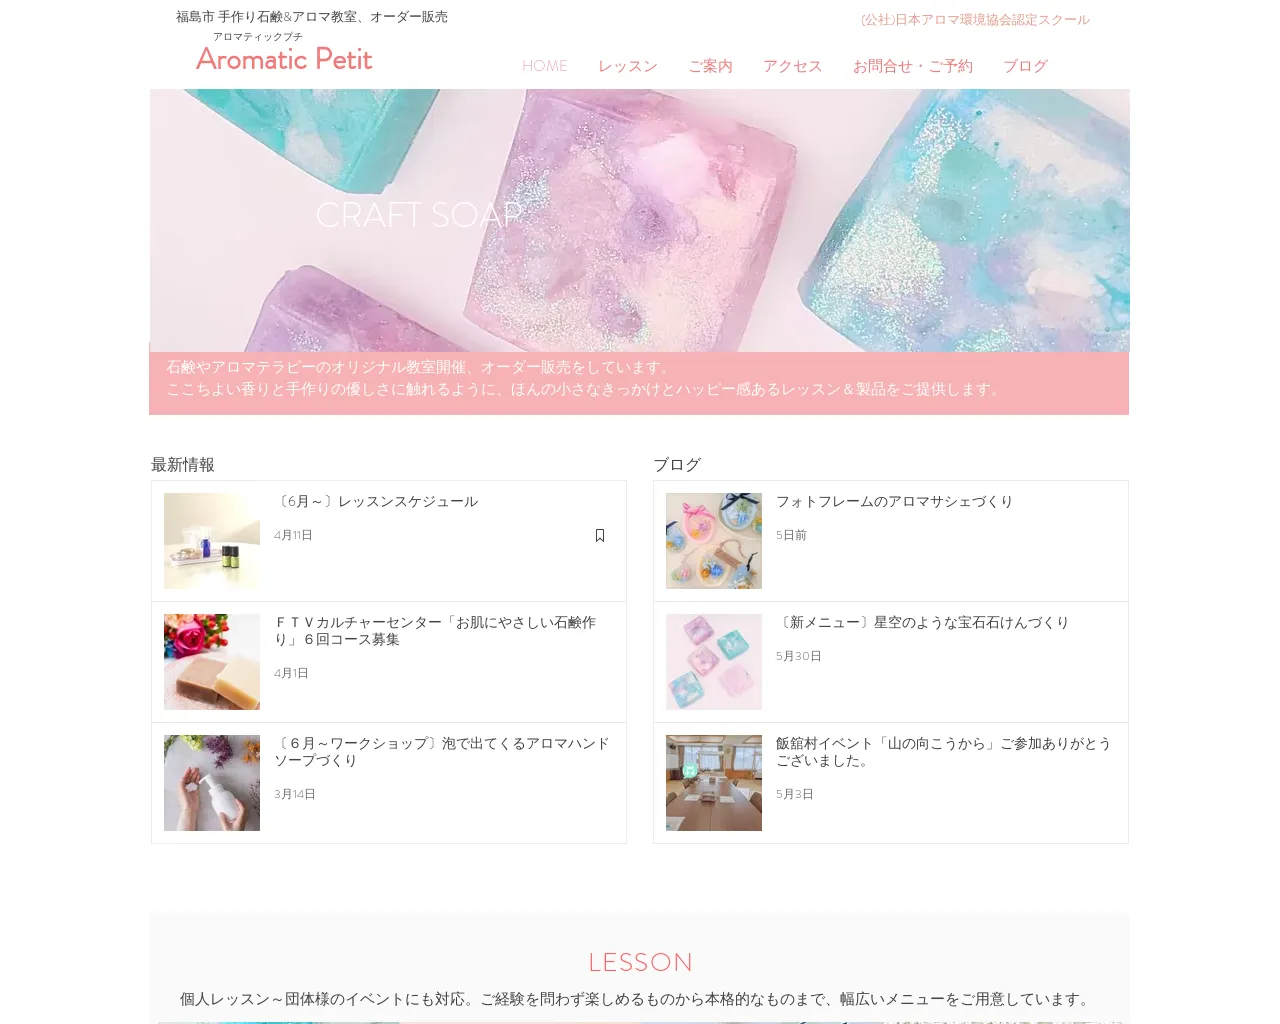 ライブラ香りの学校福島校/Aromatic Petit site